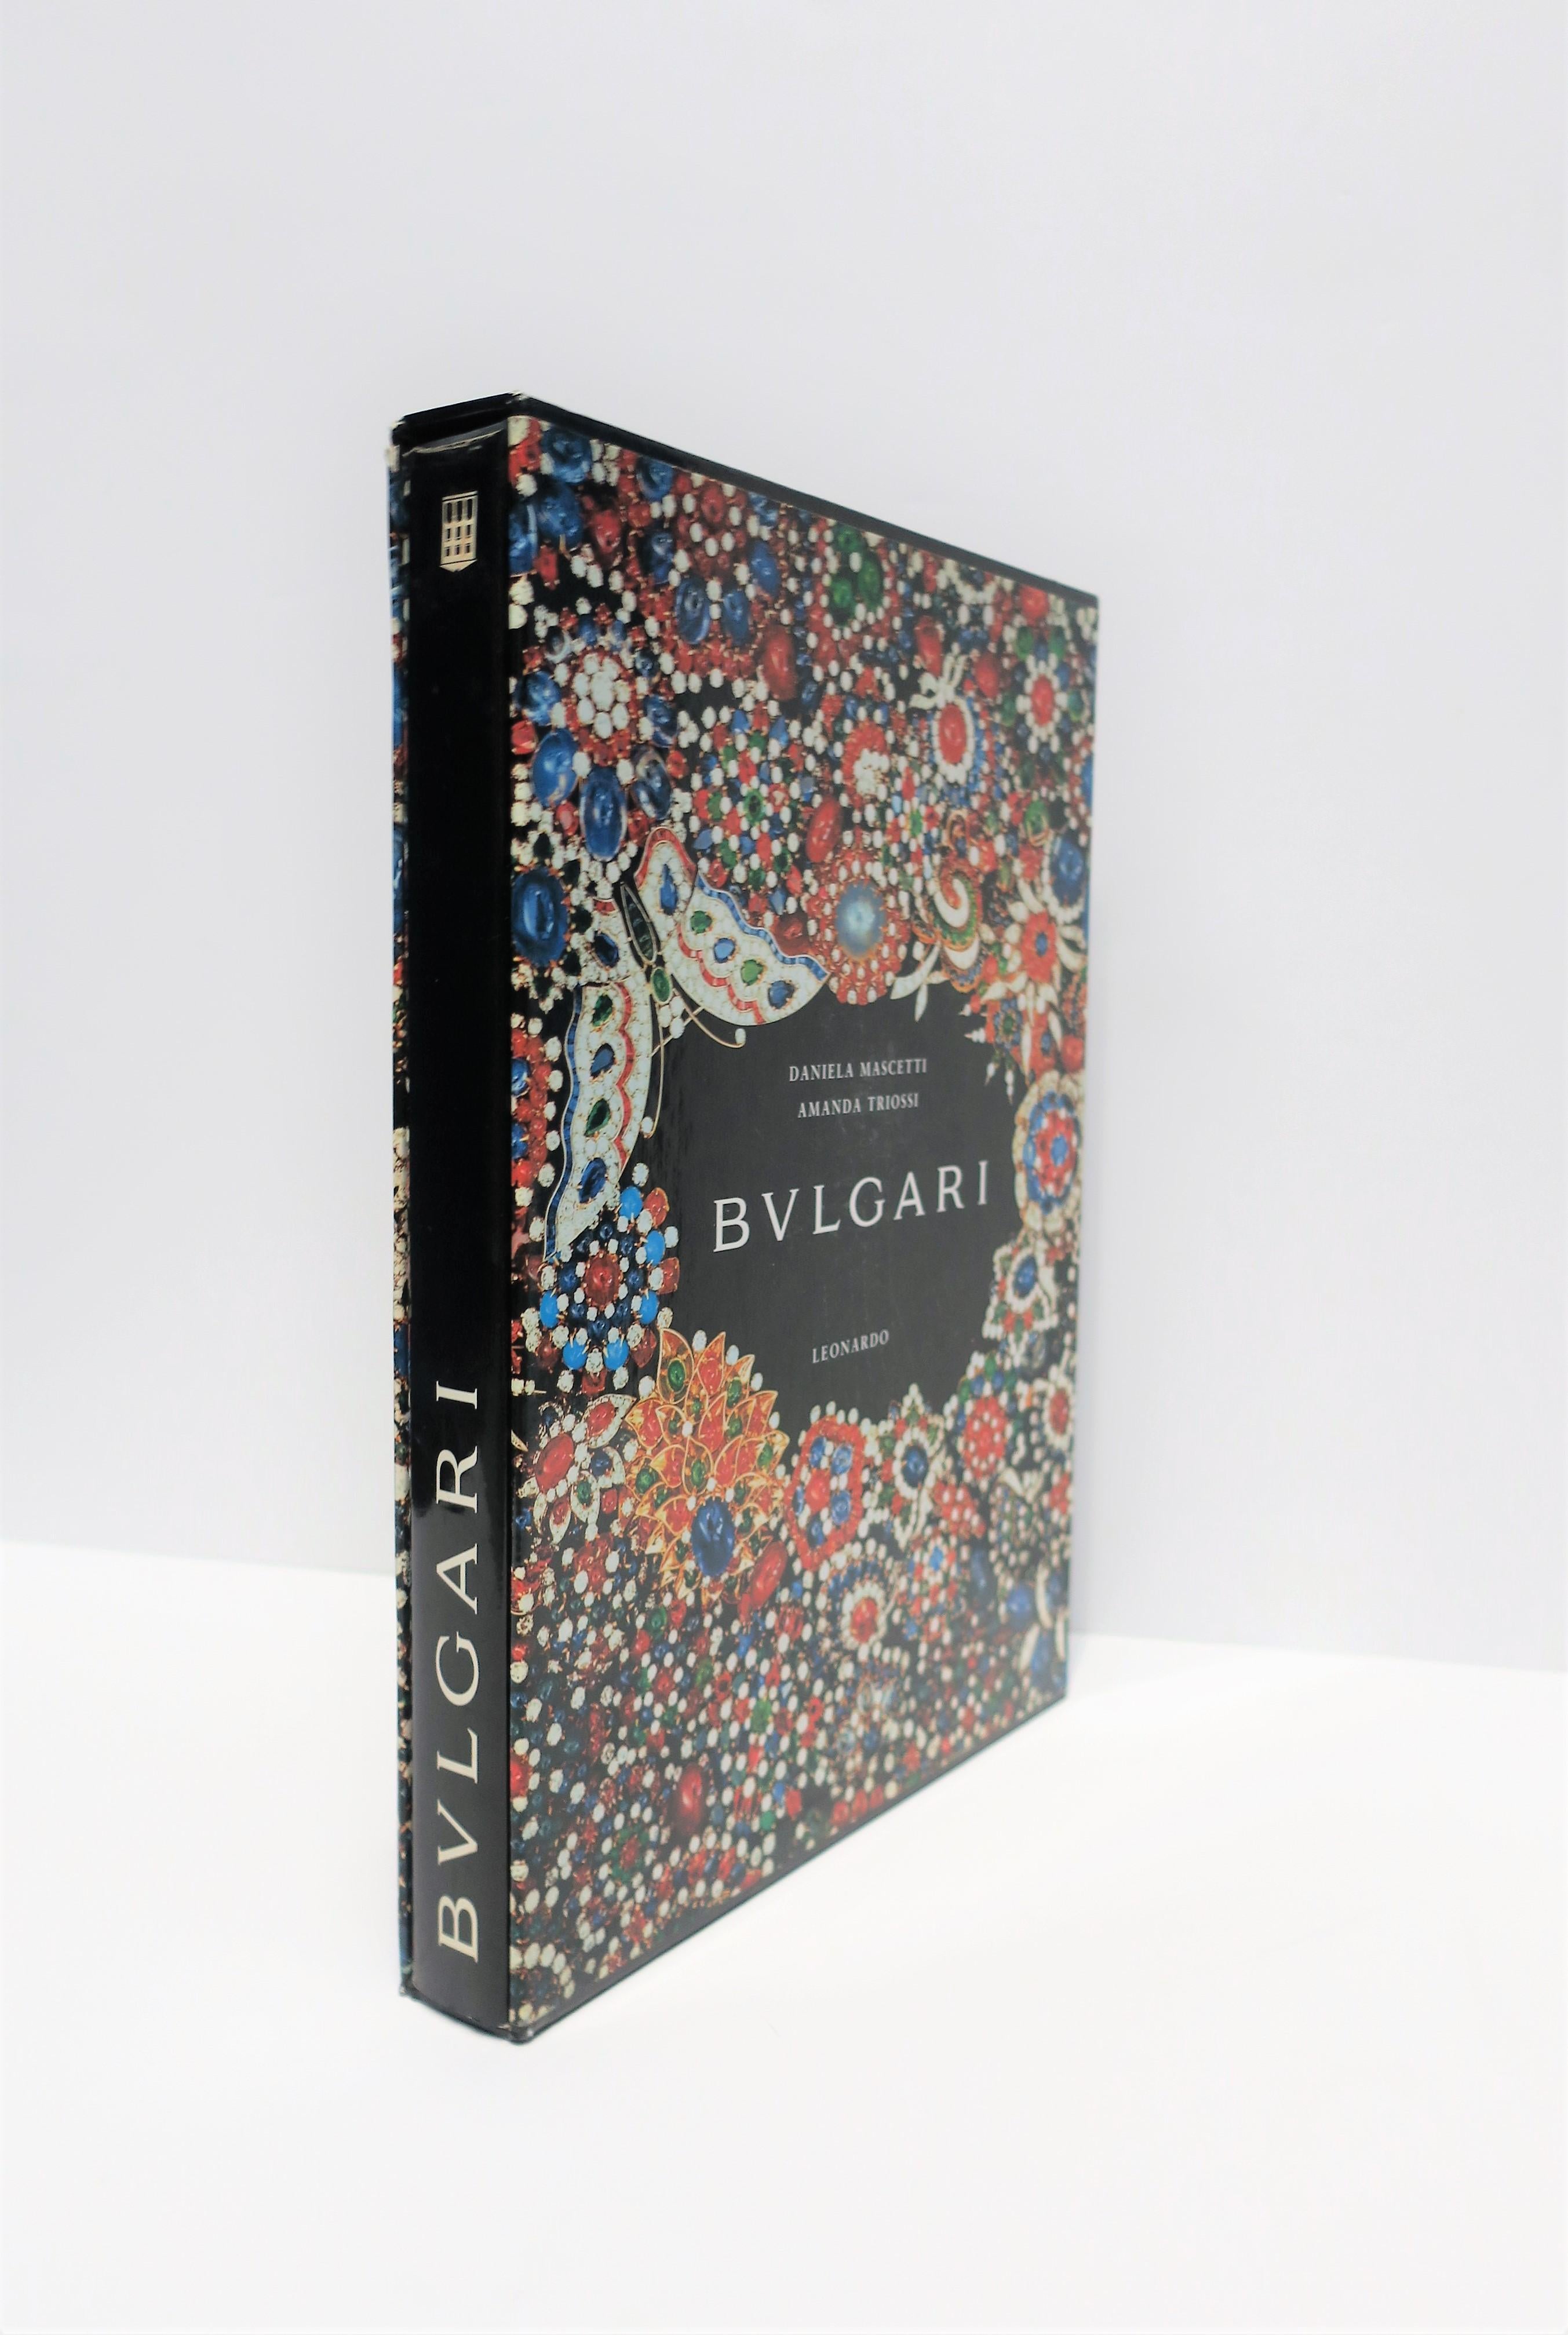 bvlgari book